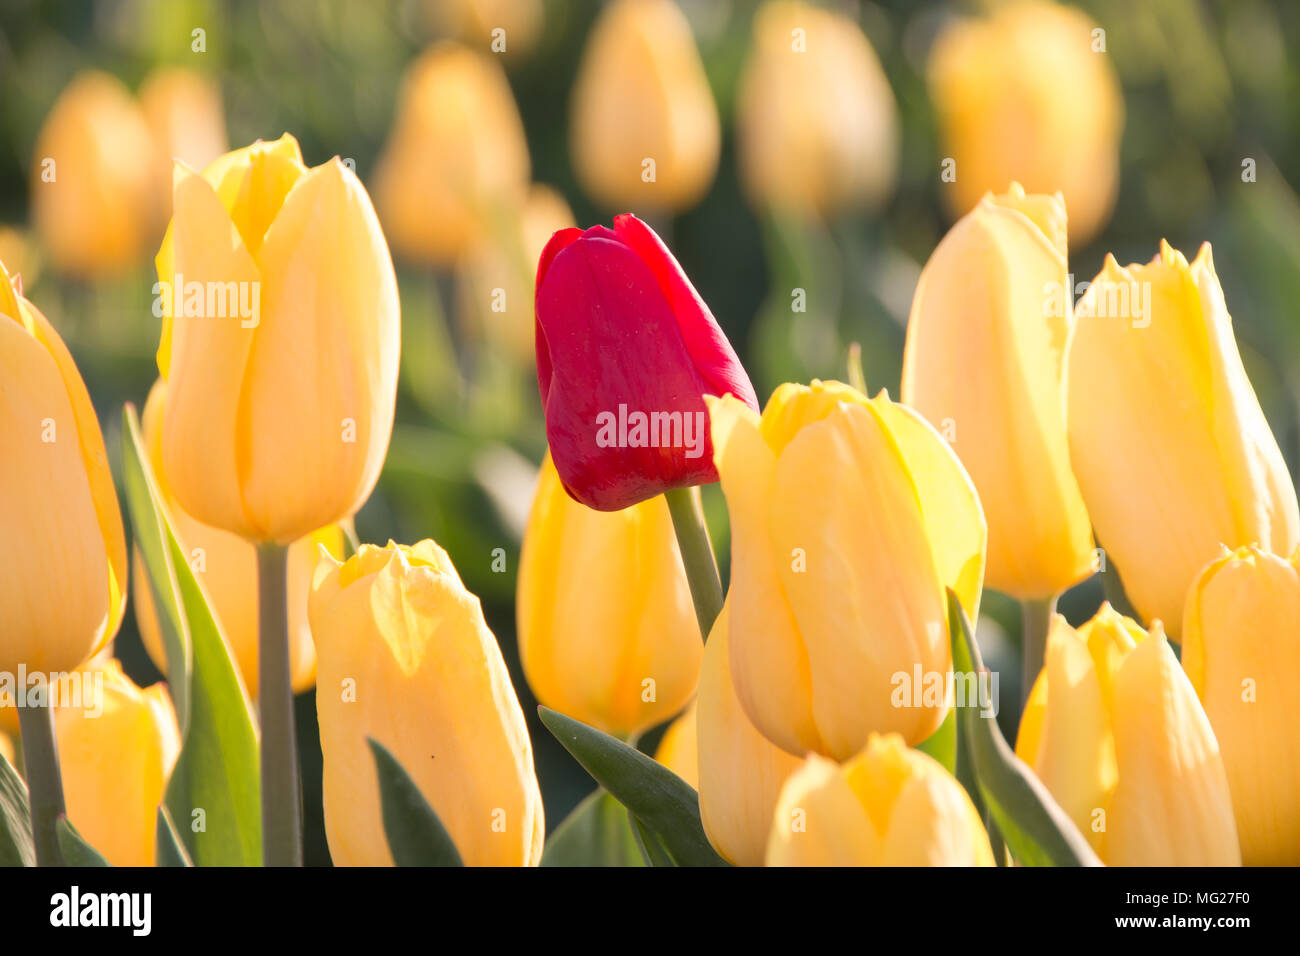 Schwaneberg, Alemania - 27 de abril de 2018: El corazón de los tulipanes de Schwaneberg, Alemania. Christiane Degenhardt's negocio familiar comienza la recolección tul Foto de stock